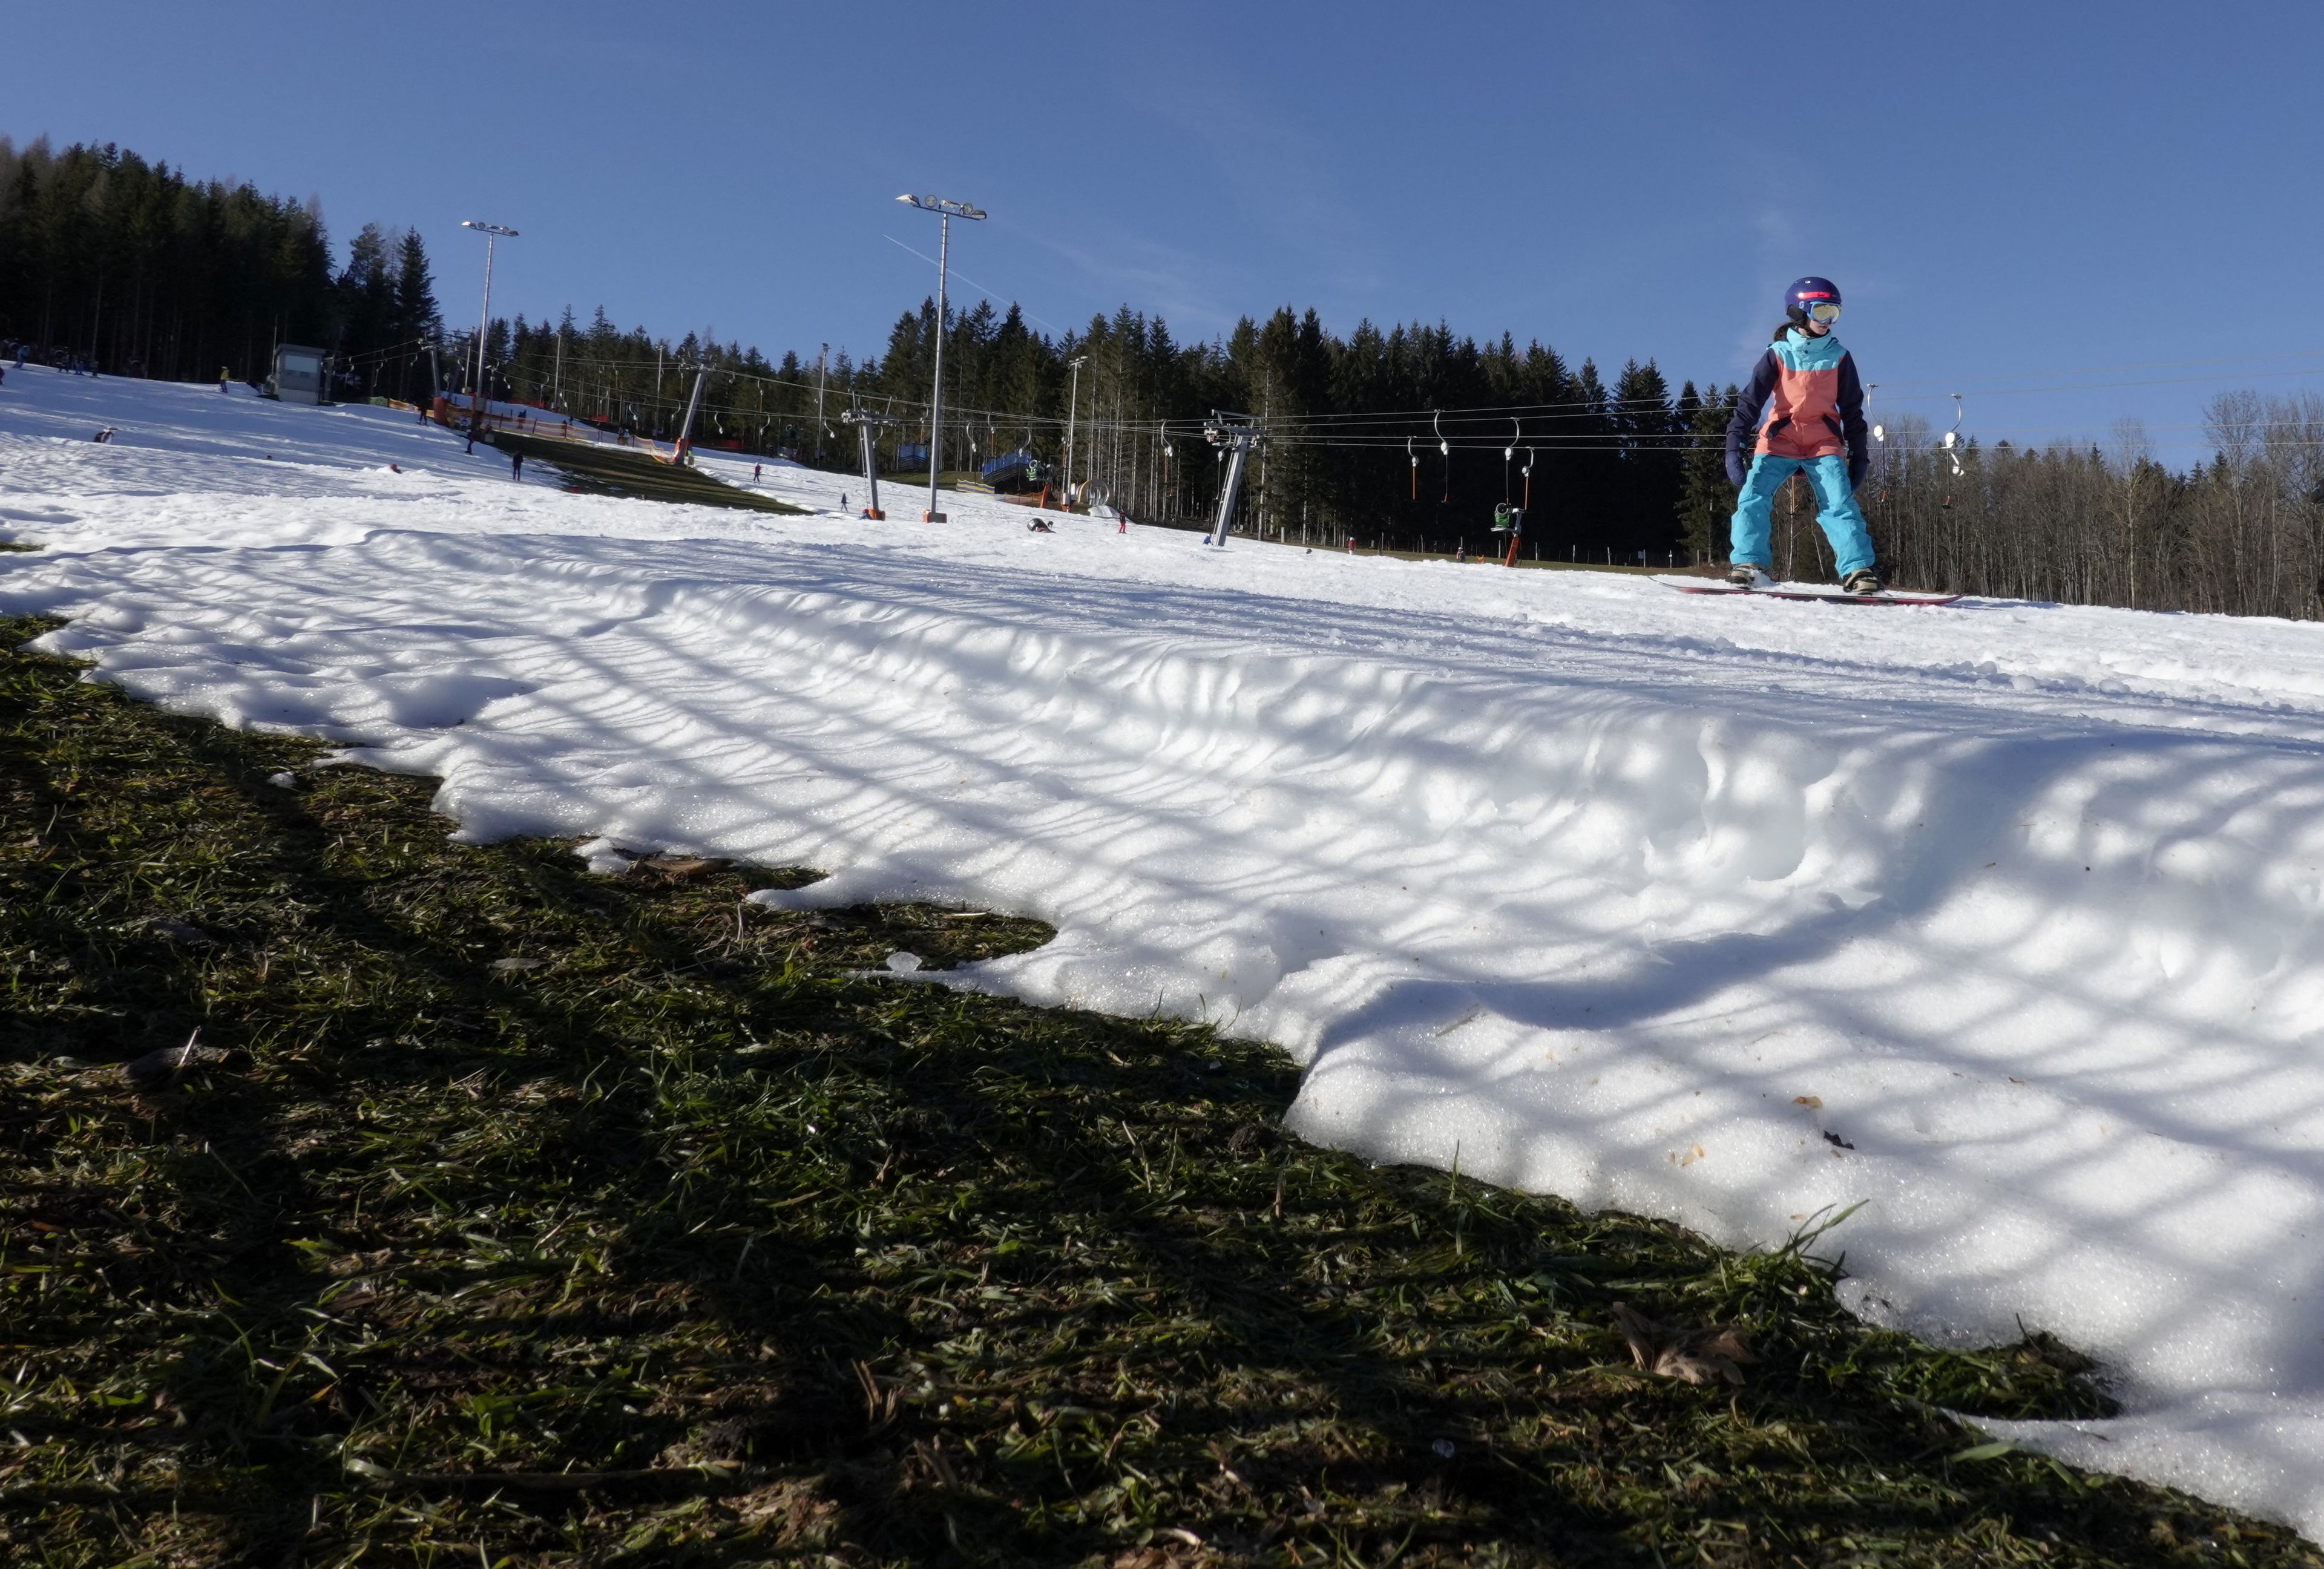 Una persona practica snowboard en una pista de esquí artificial en la estación de esquí de St. Corona, mientras unas temperaturas inusualmente cálidas azotan Austria.